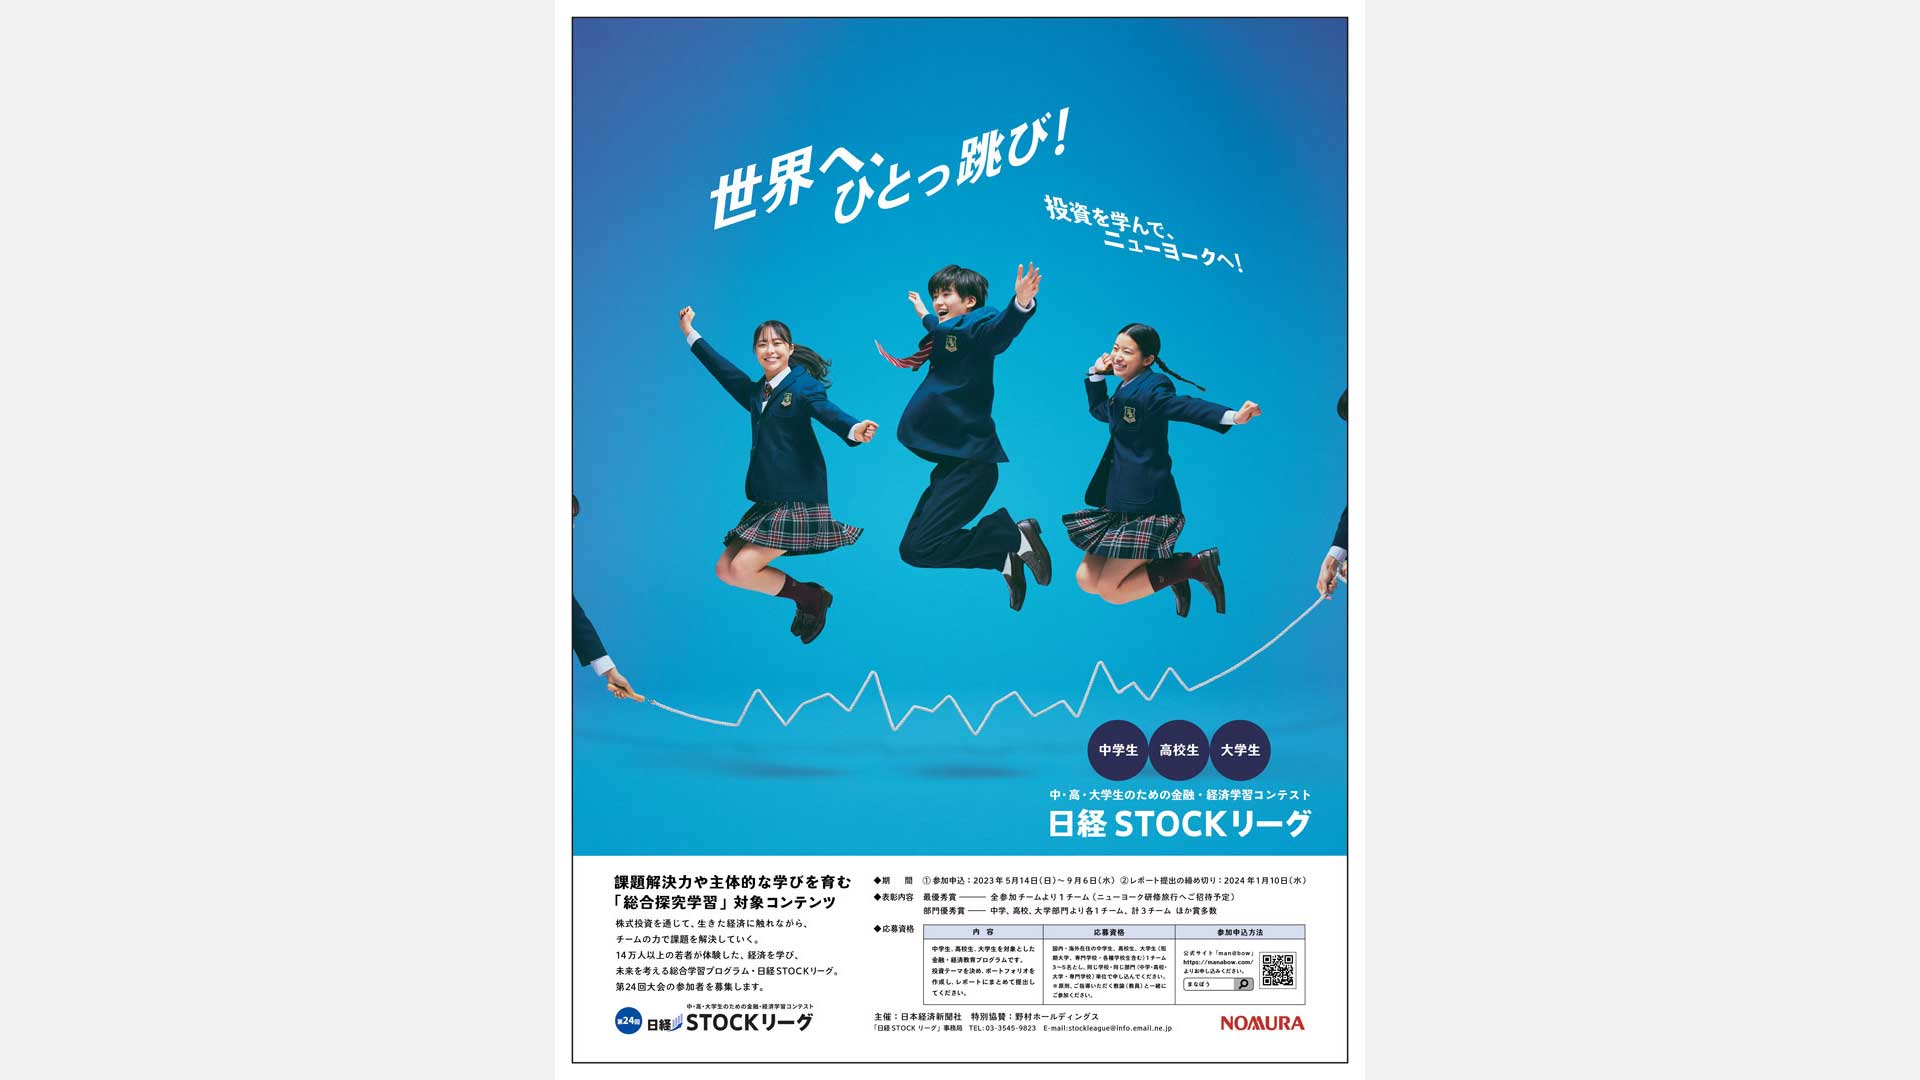 「日経STOCK リーグ」新聞広告